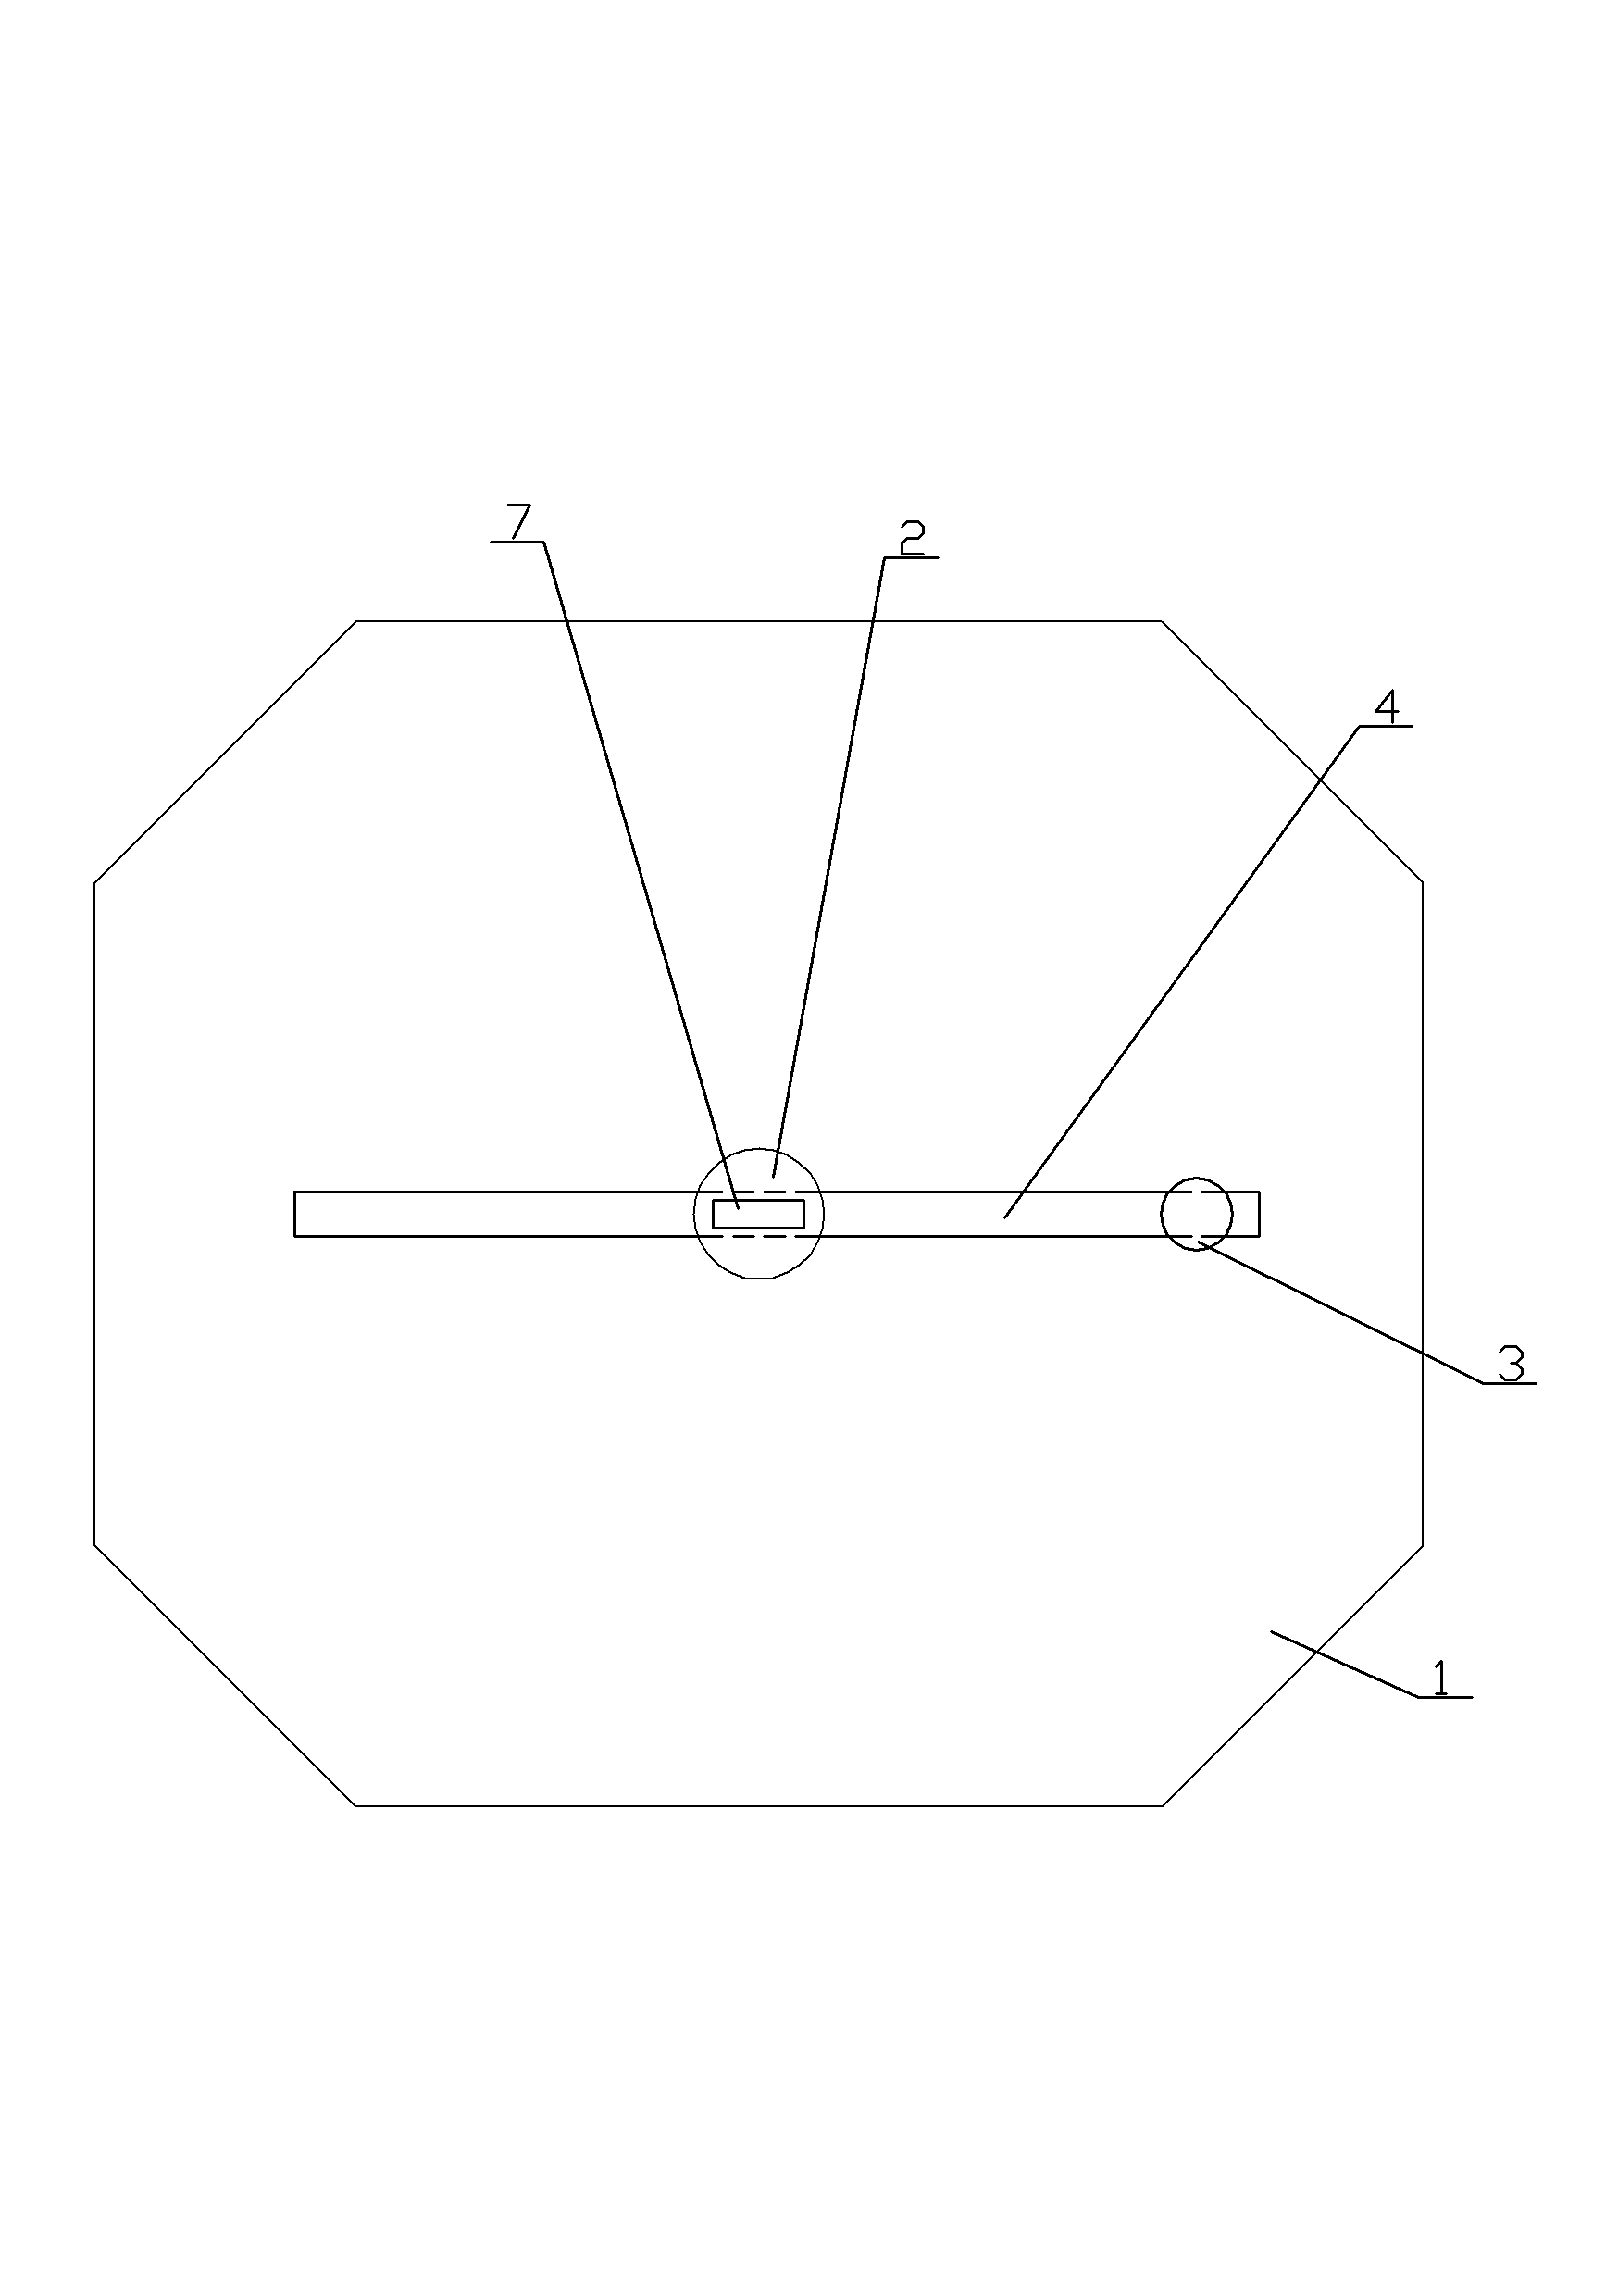 Film-cutting machine structure